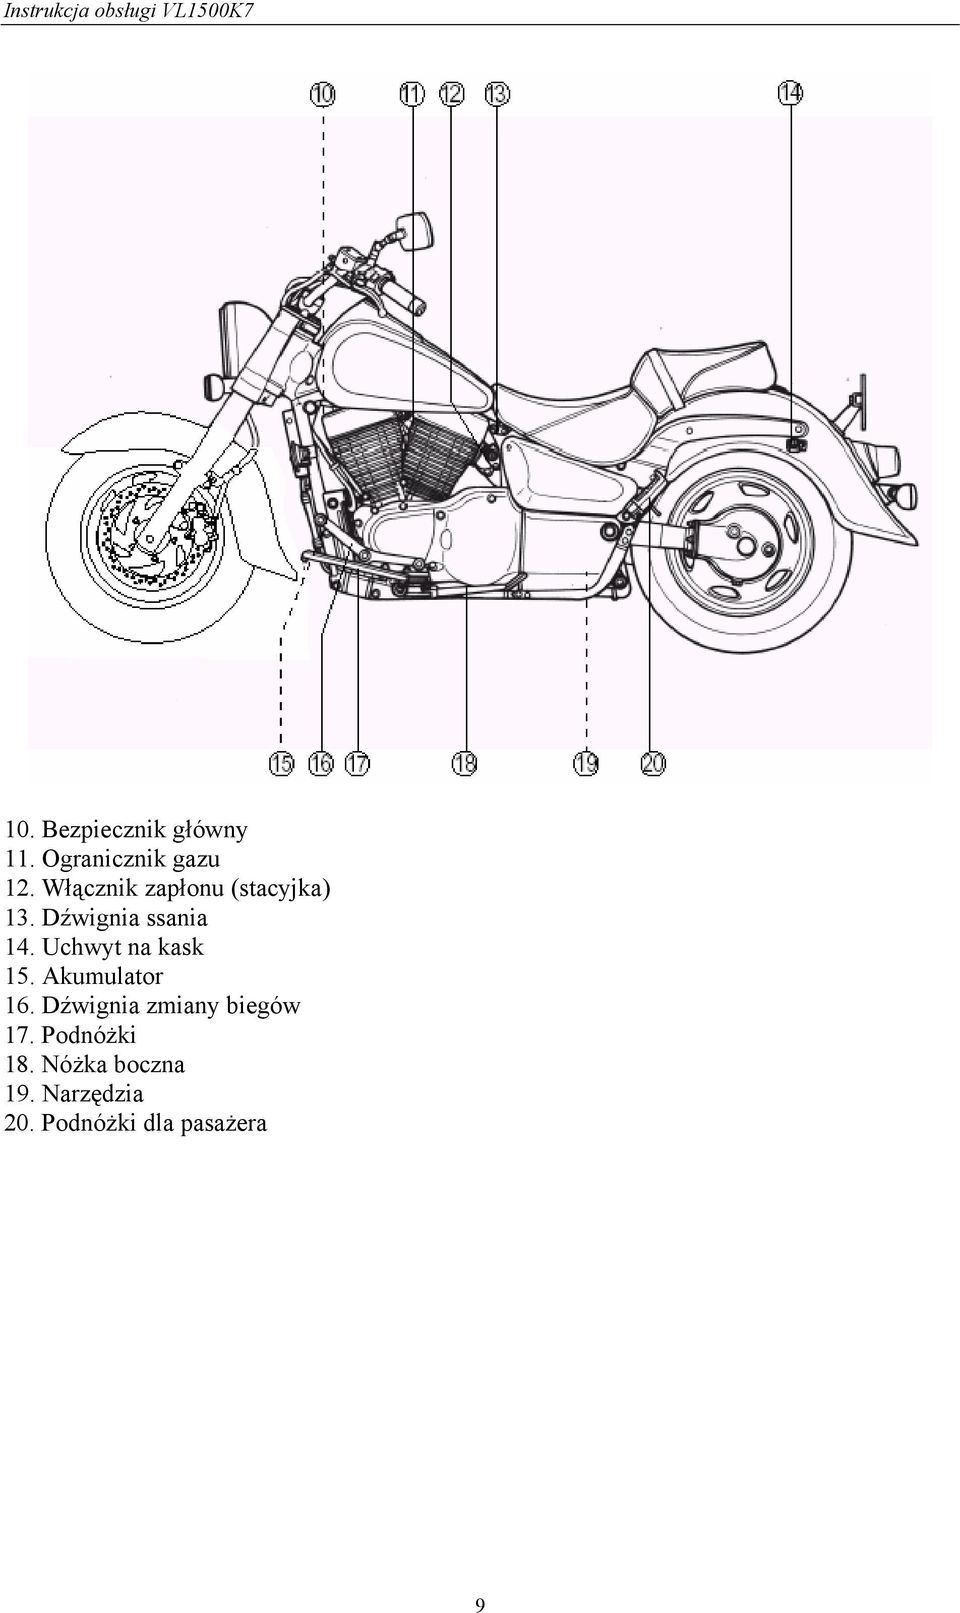 Instrukcja Obsługi Motocykla - Pdf Free Download